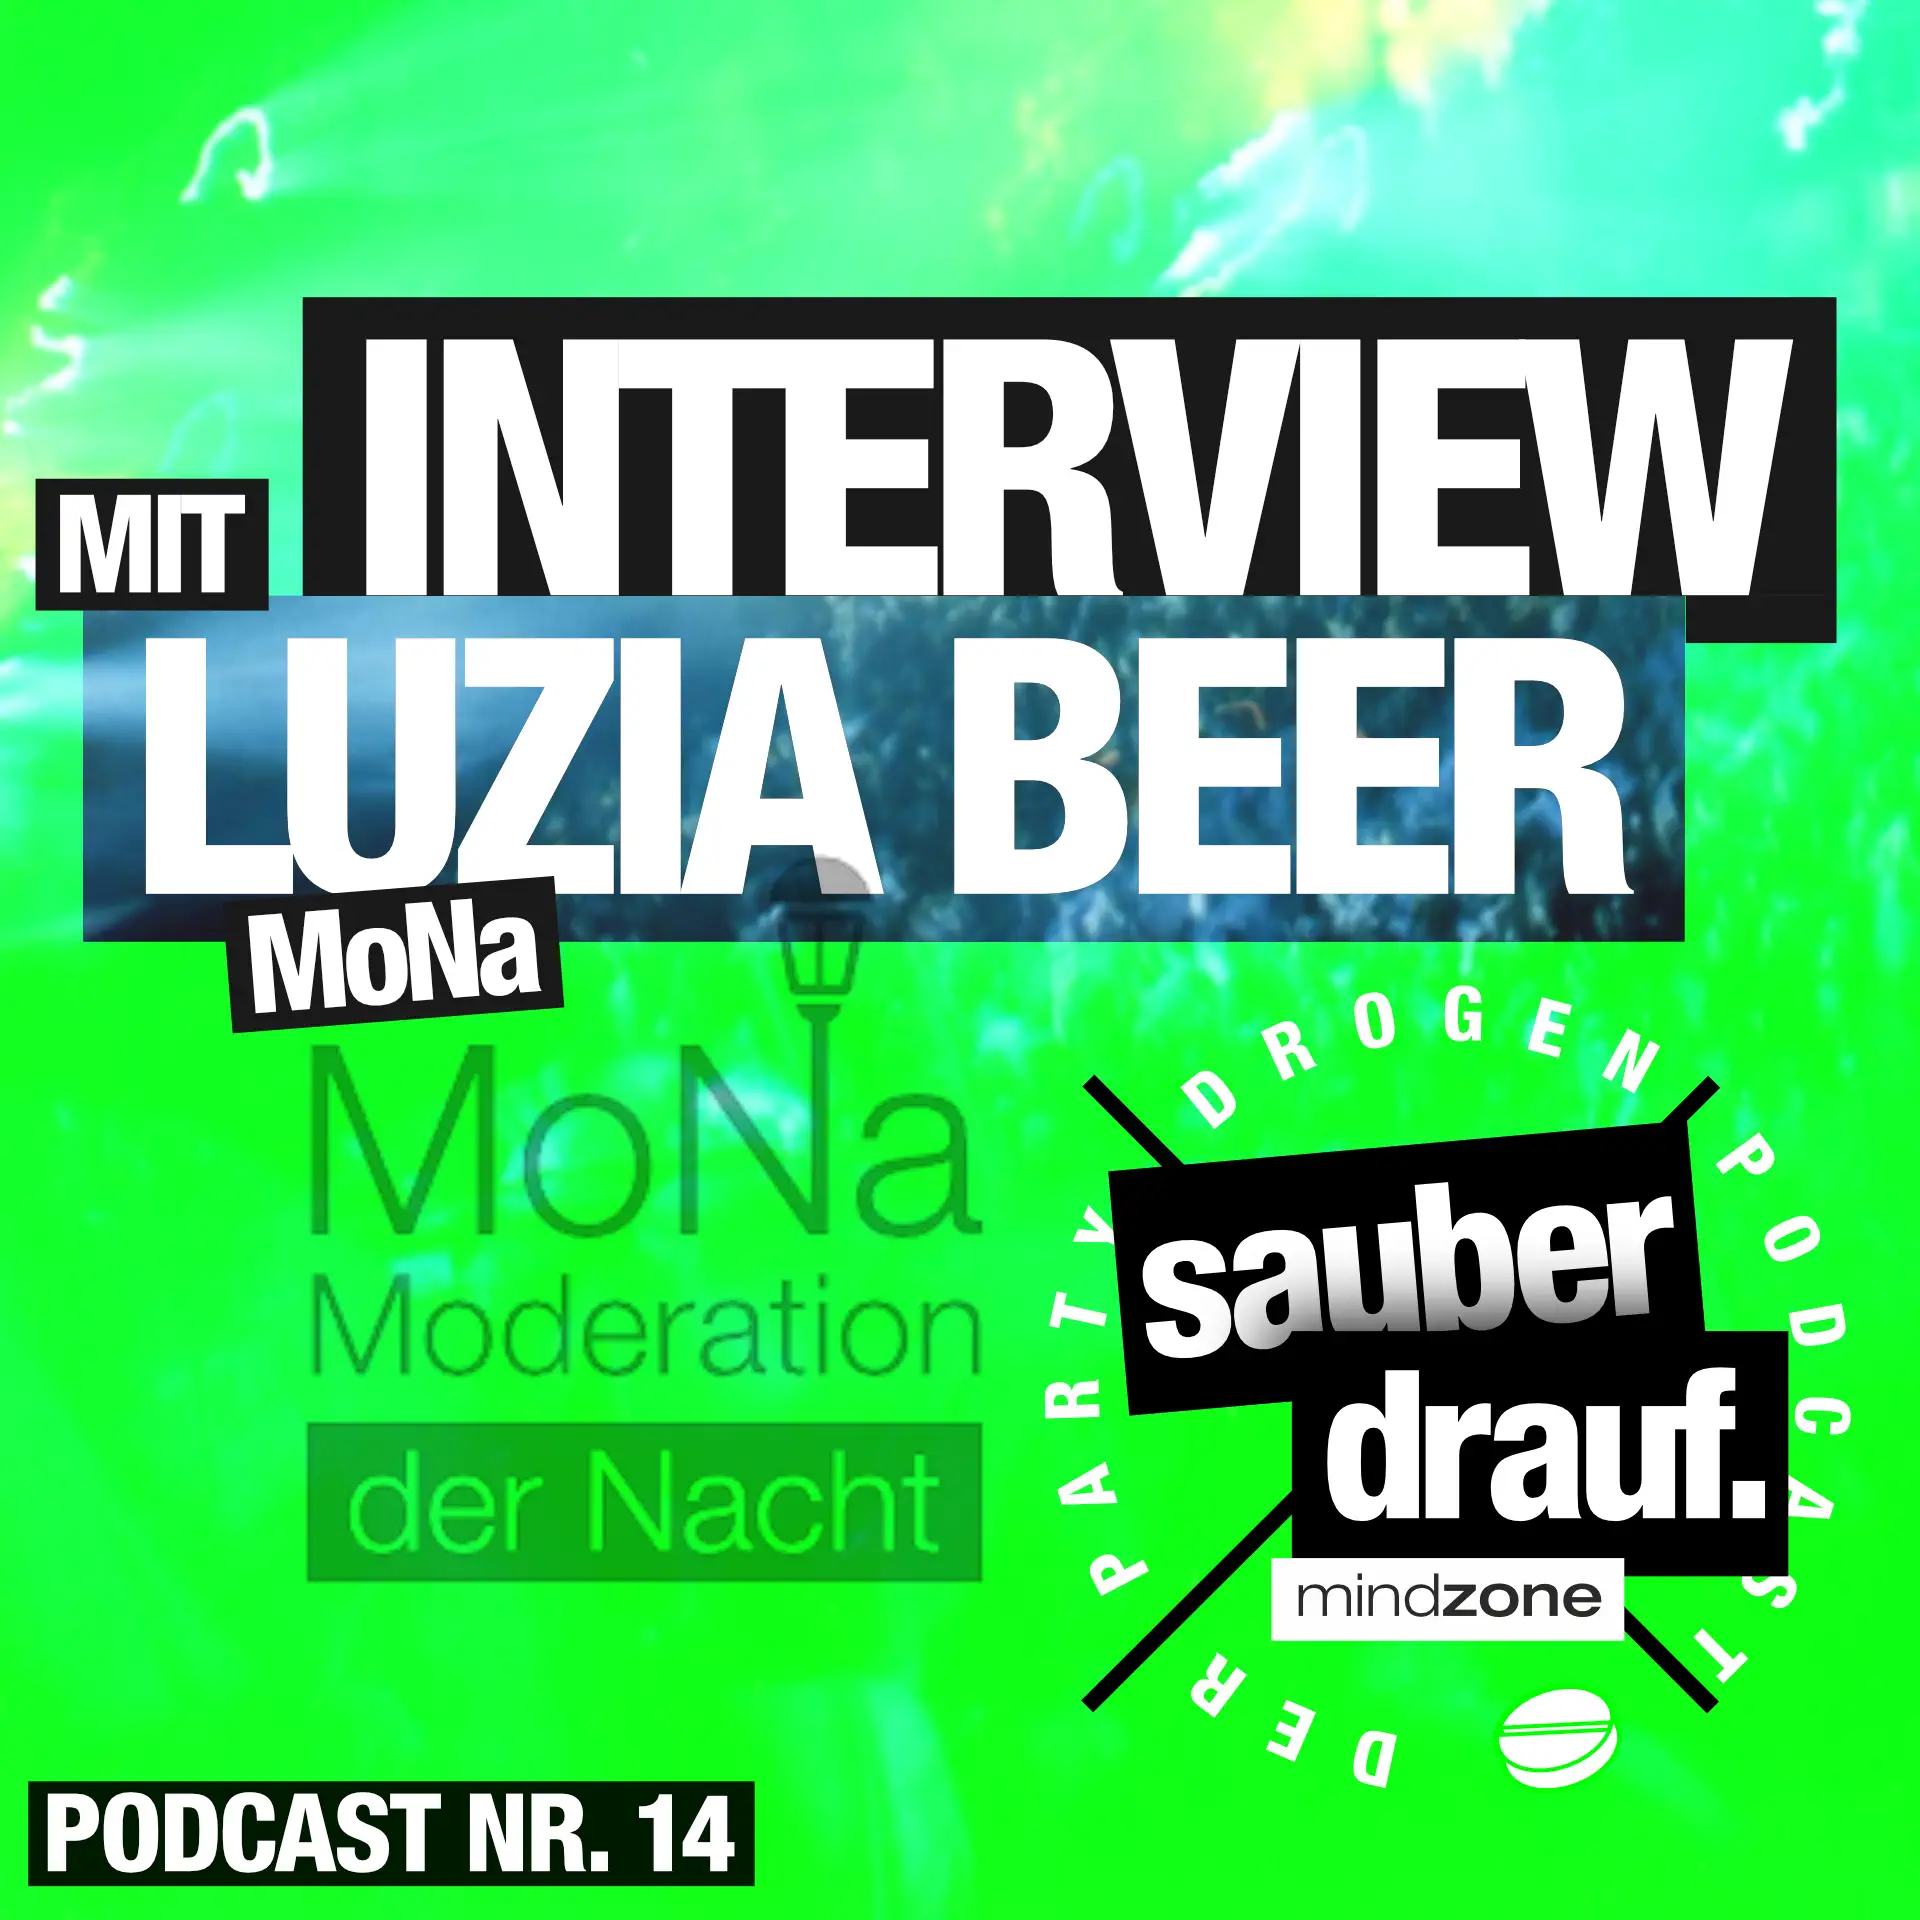 sauberdrauf - der mindzone partydrogen podcast - 14 - interview mit nachtbuergermeisterin